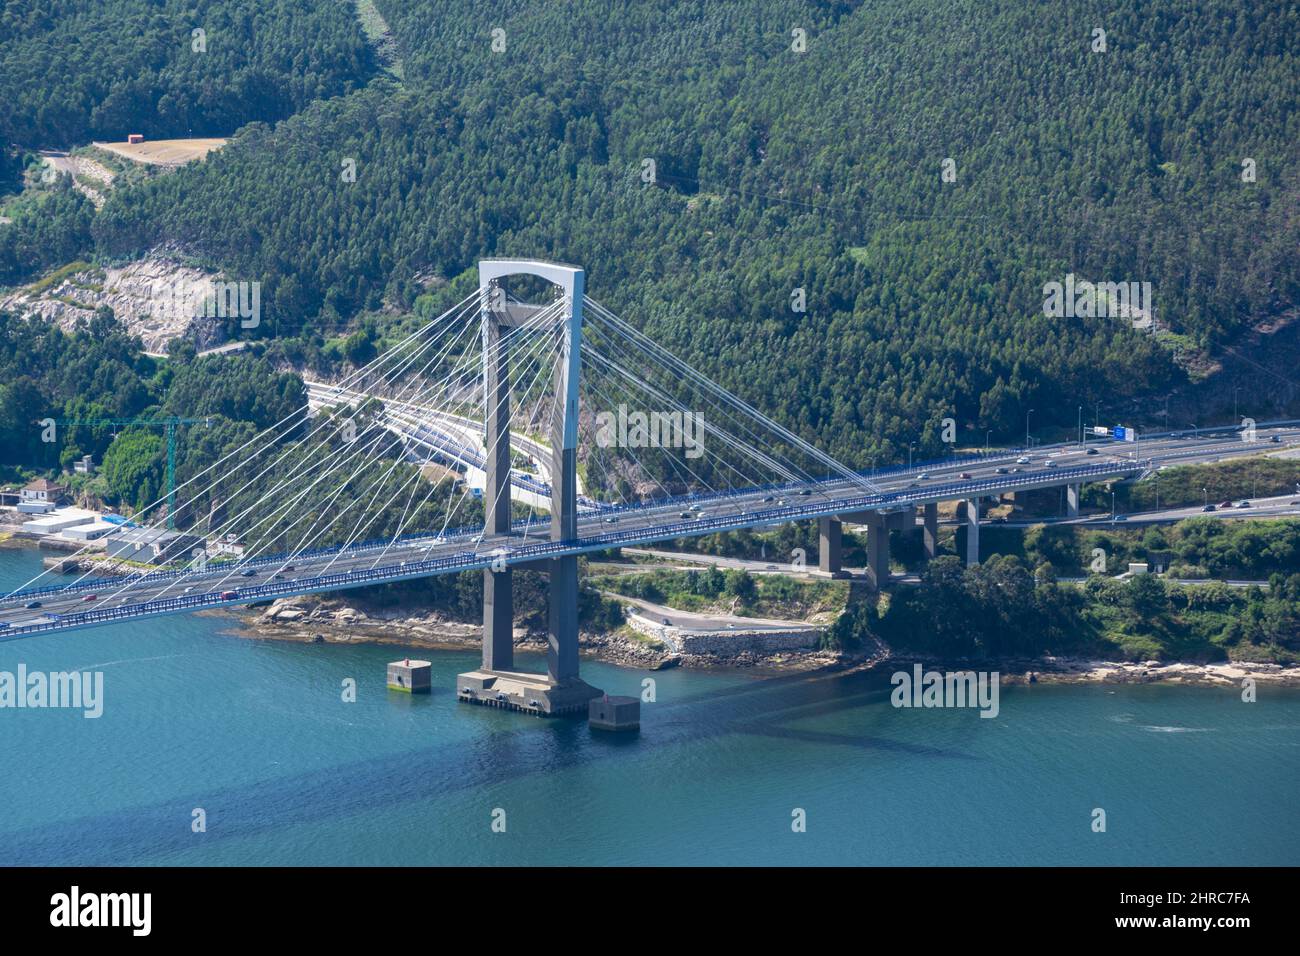 View of Rande Bridge across Ria de Vigo from Galicia, Spain Stock Photo